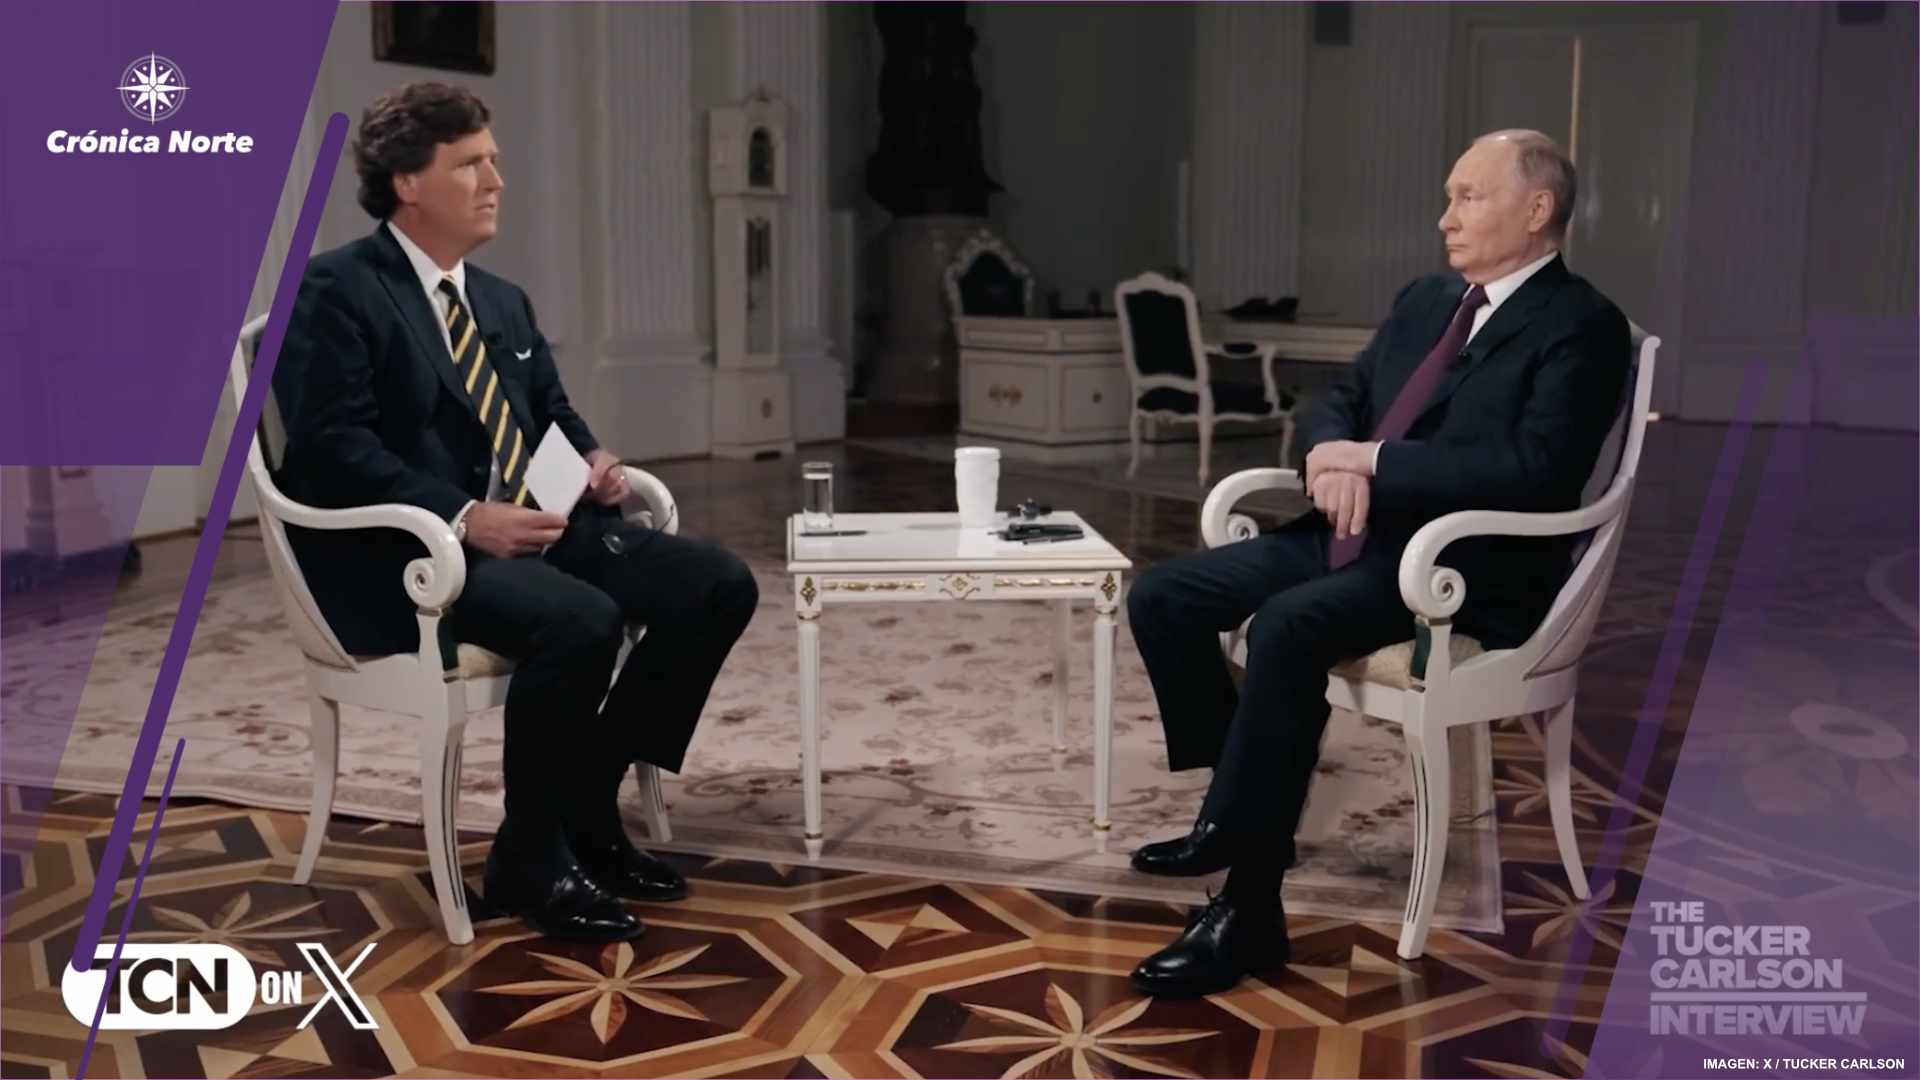 Entrevista de Carlson a Putin sacude a opinión pública